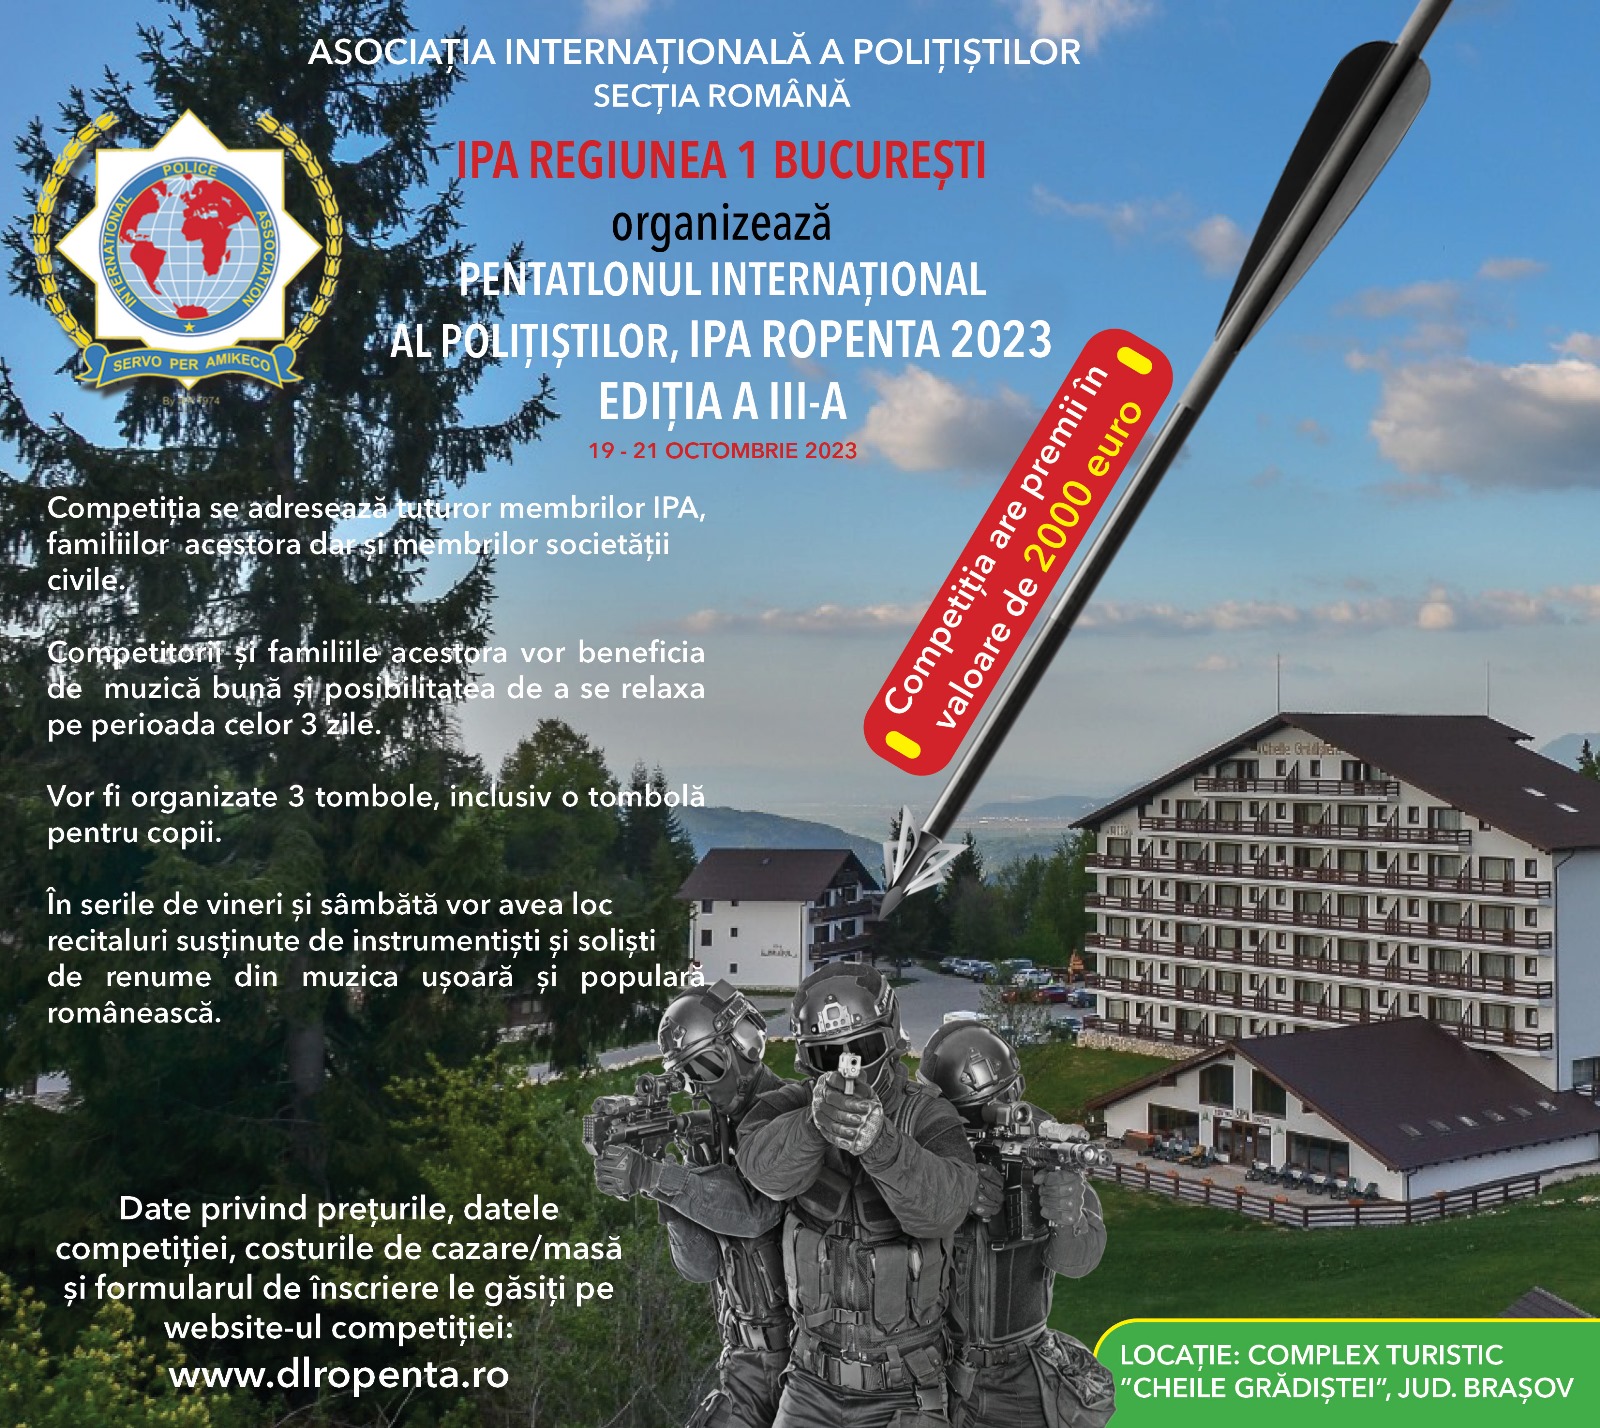 IPA Regiunea 1 București organizează IPA ROPENTA 2023 – Ediția III